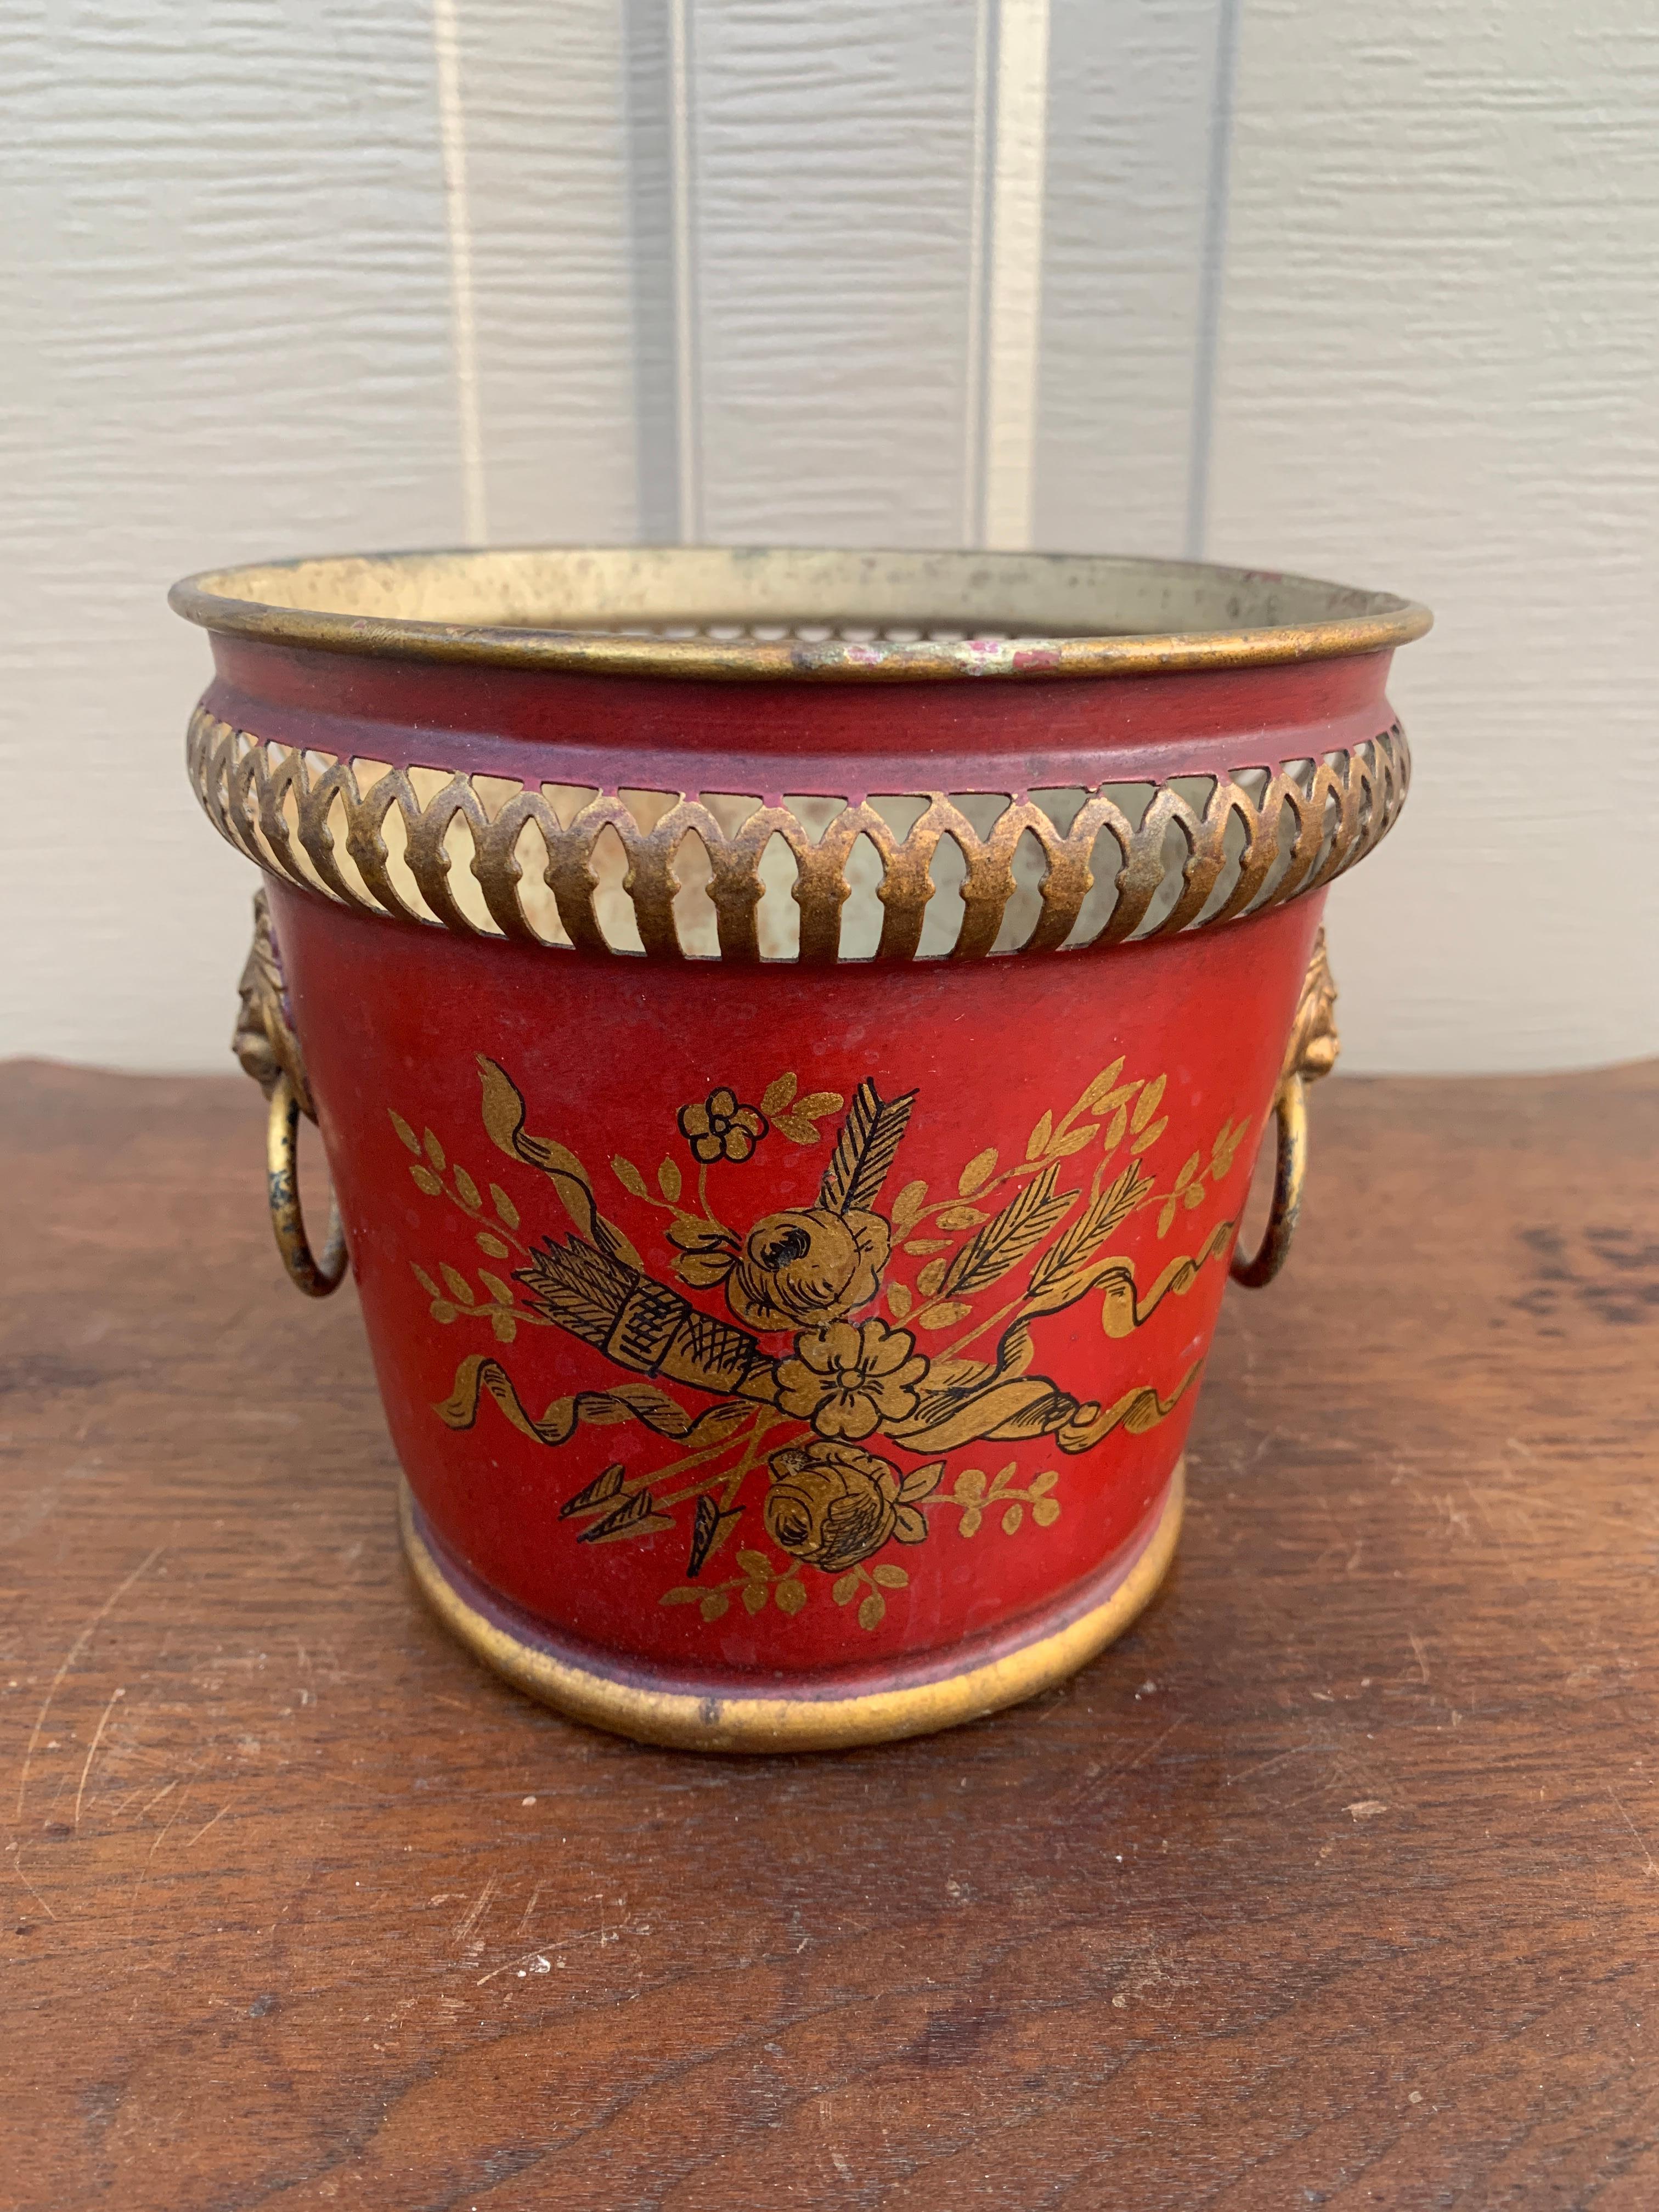 Ein prächtiger neoklassischer Übertopf, Übertopf oder eine Vase in Rot und Gold aus Zinn

Frankreich, CIRCA Anfang 20. Jahrhundert

Maße: 6 